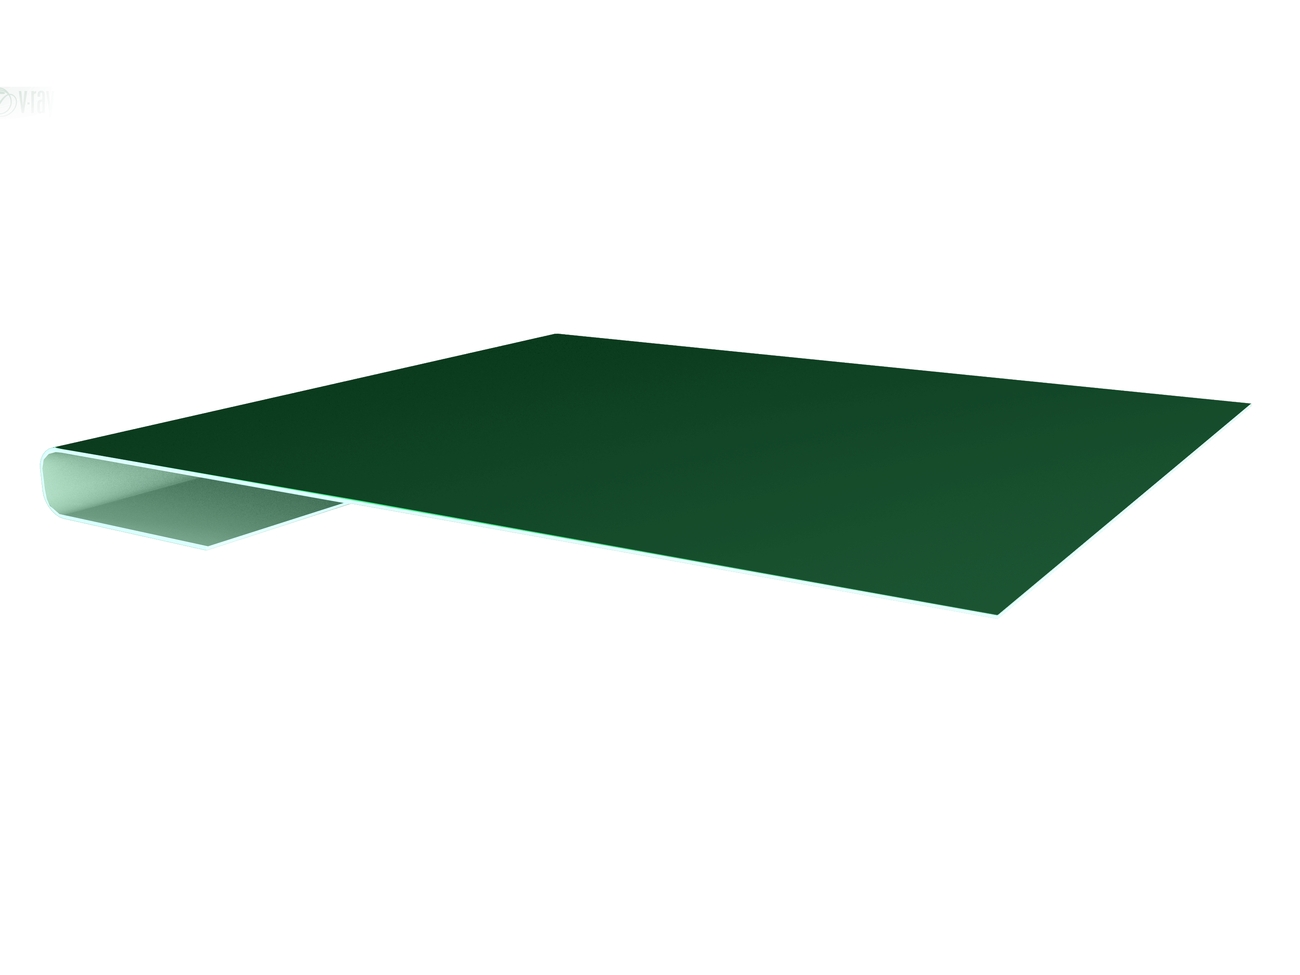 Планка завершающая простая 65мм Satin с пленкой RAL 6005 зеленый мох